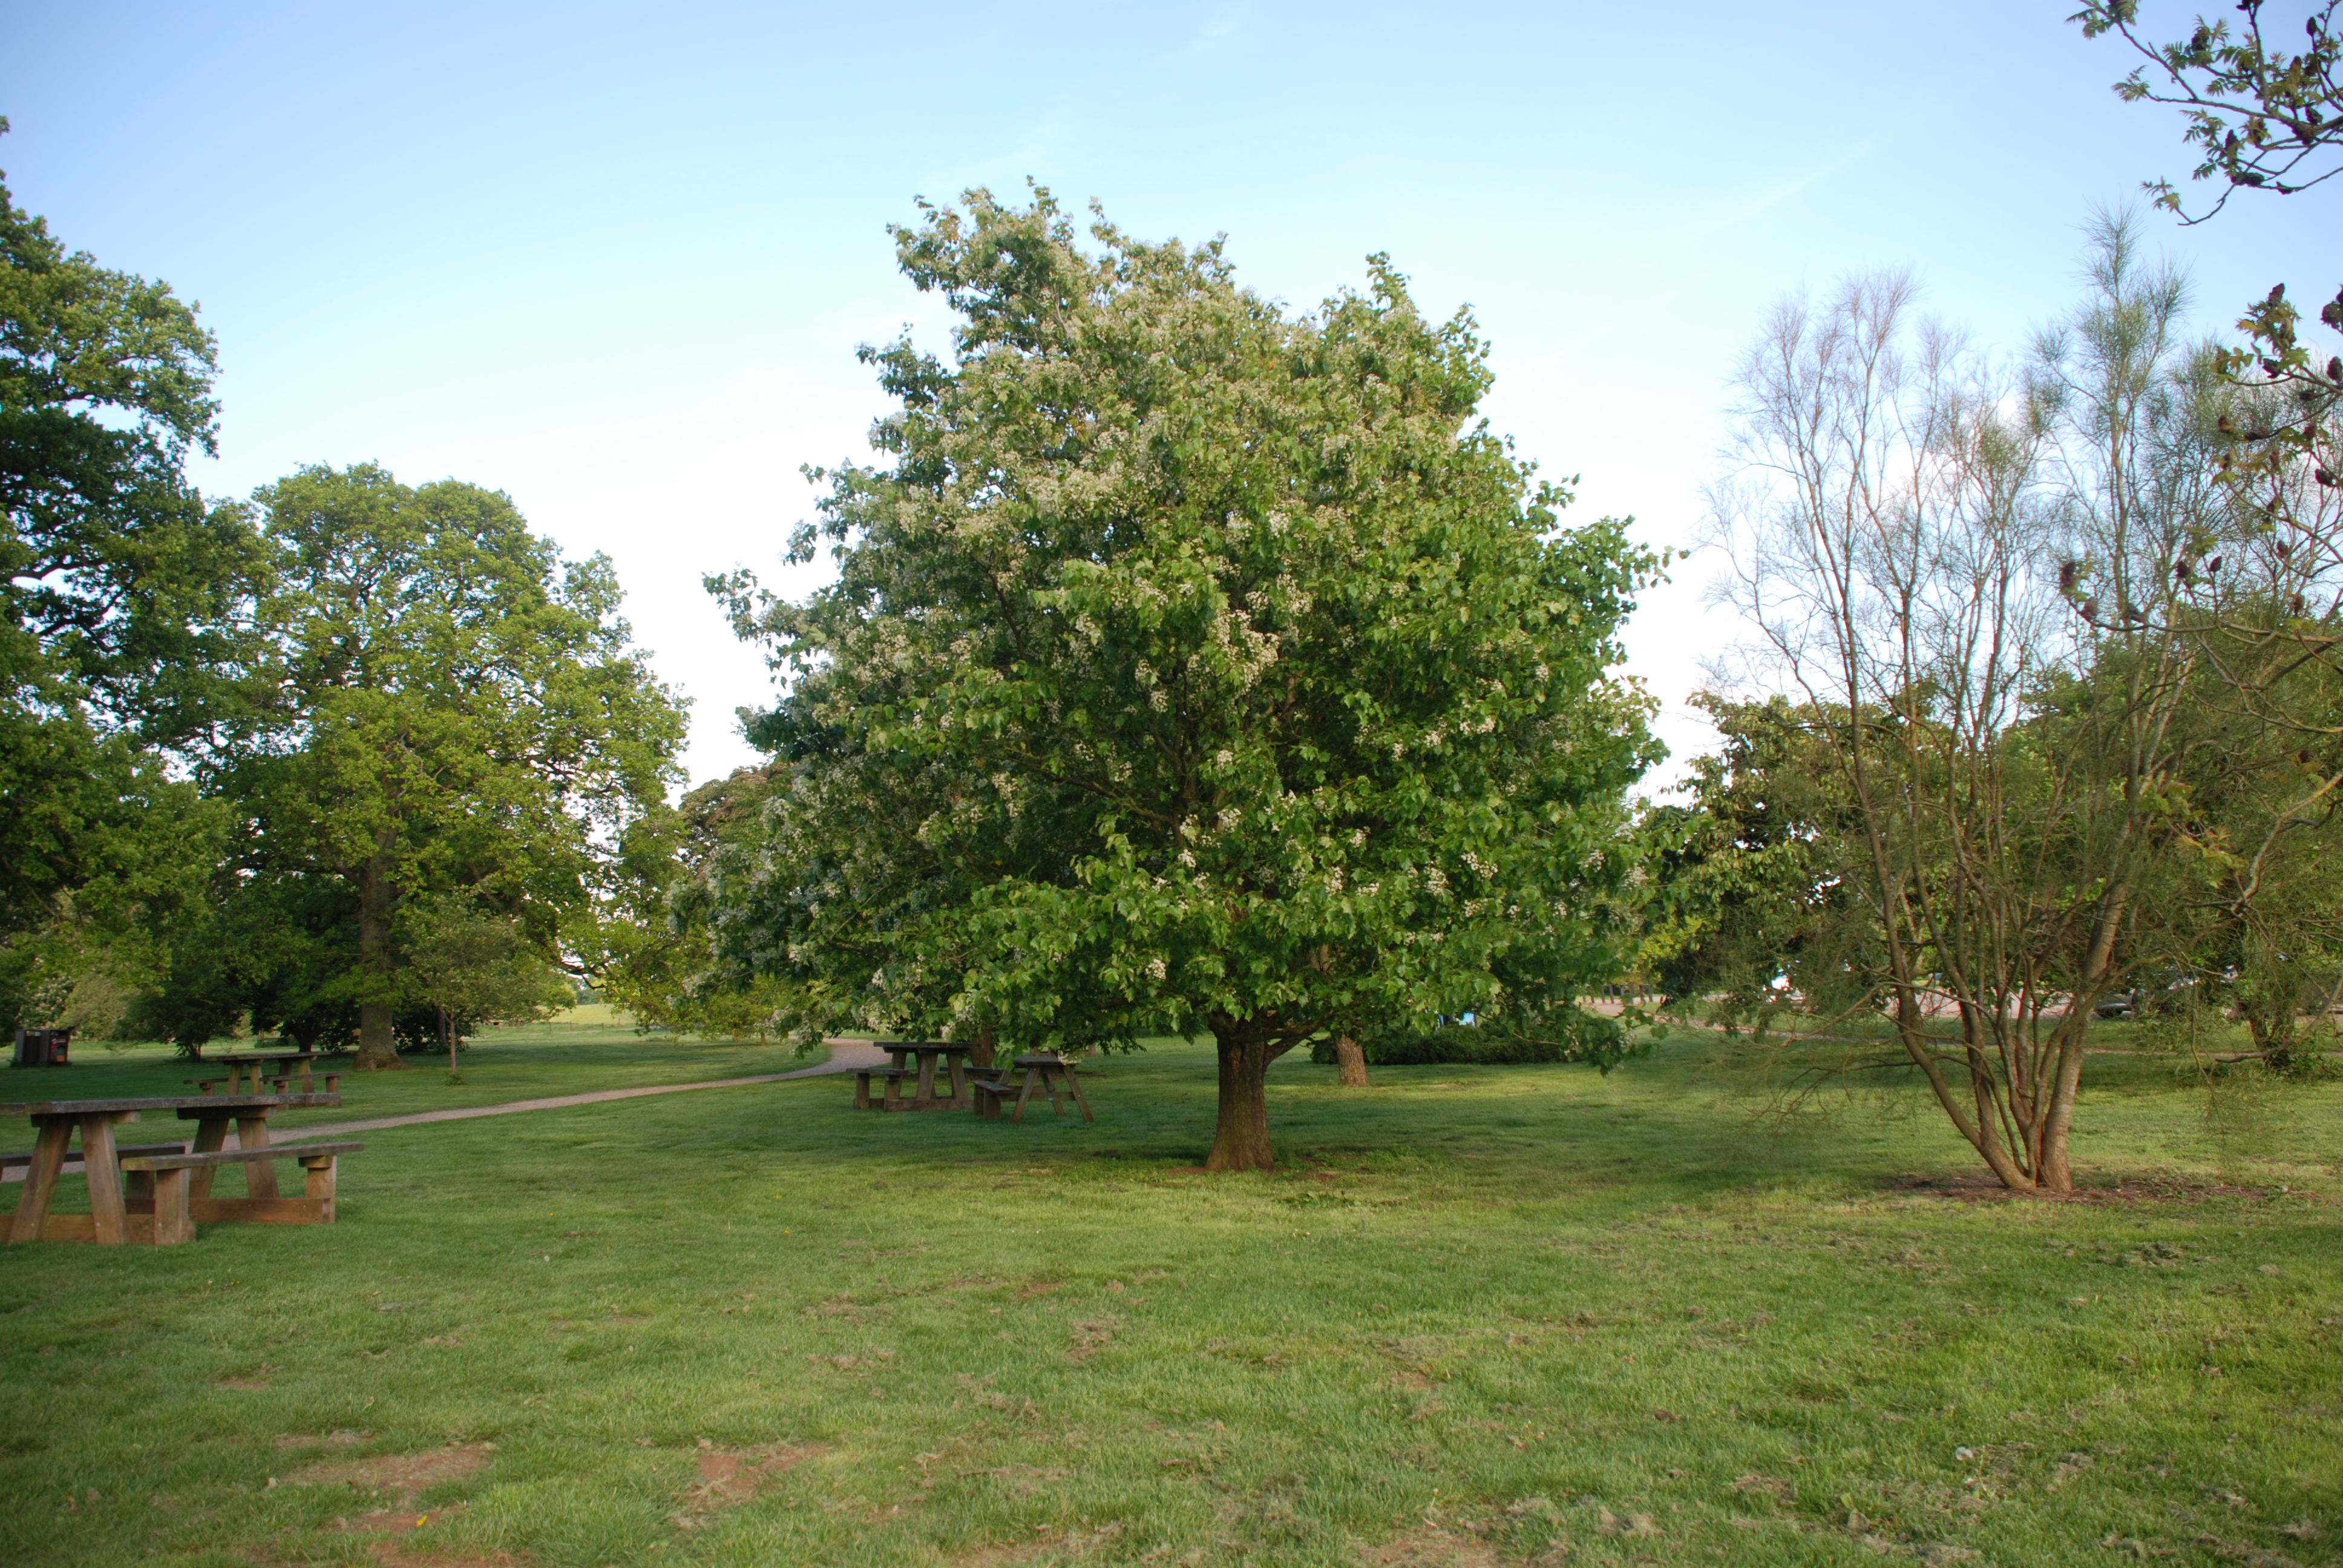 Westonbirt arboretum